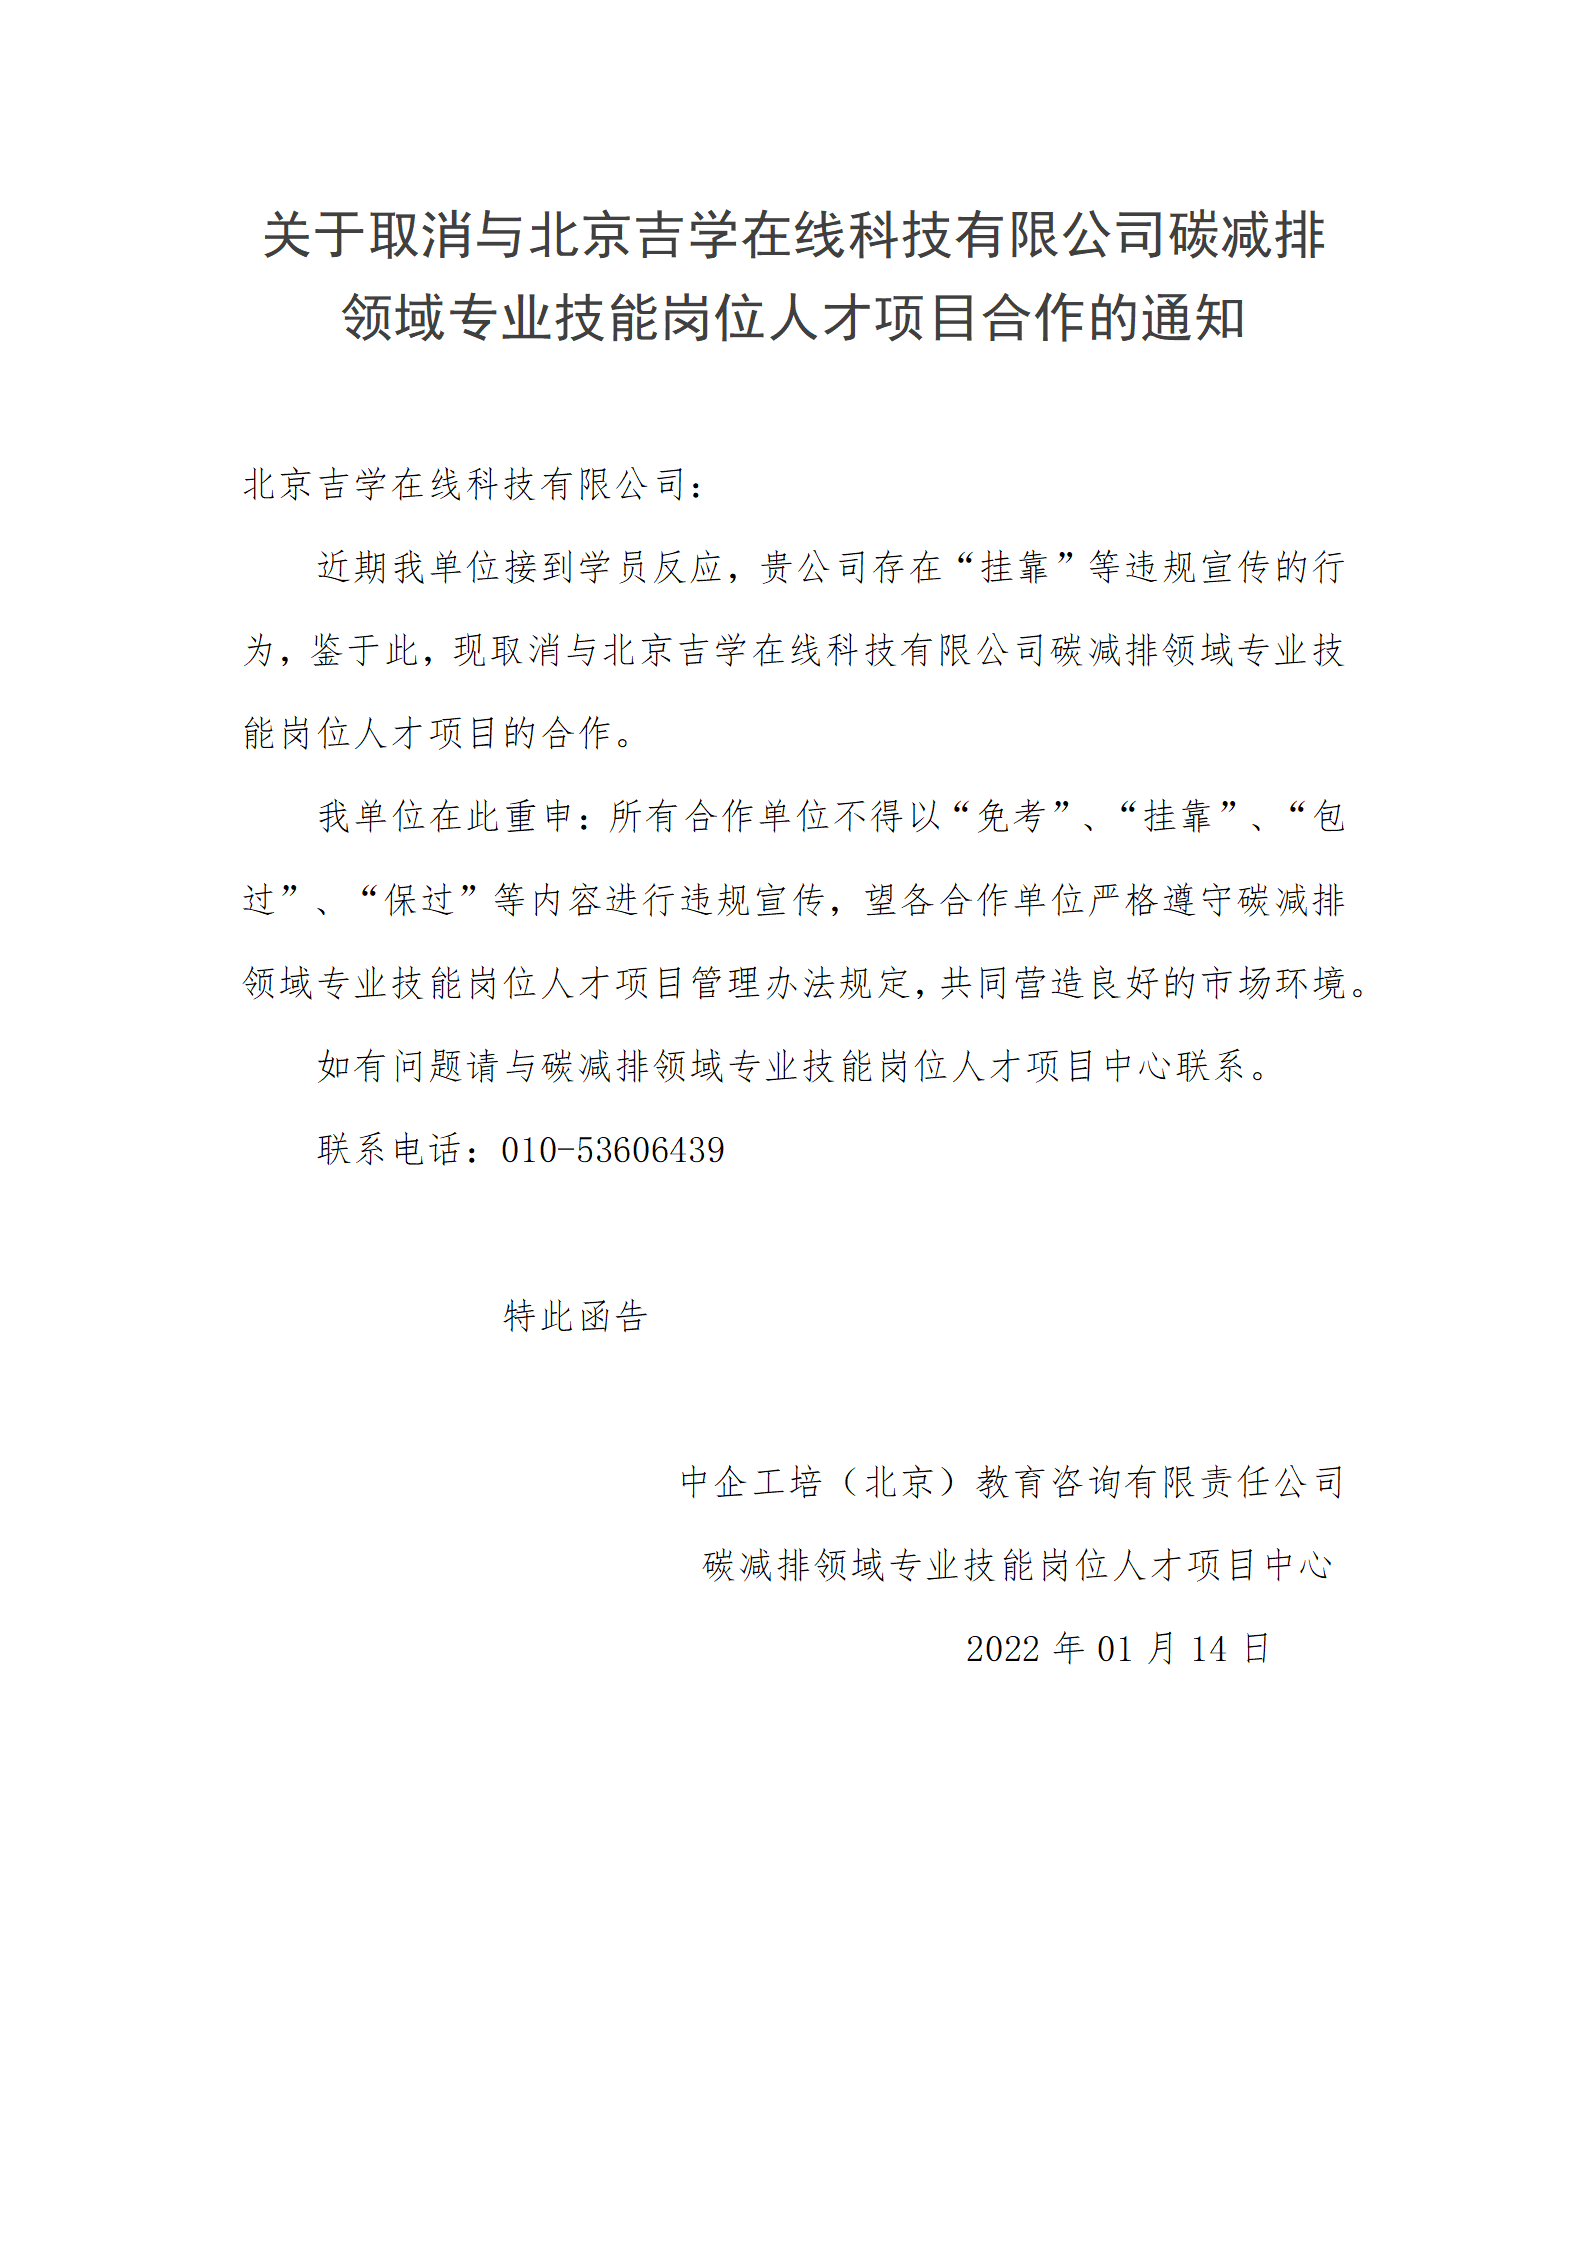 关于取消与北京吉学在线科技有限公司碳减排领域专业技能岗位人才项目合作的通知——点名_01.png